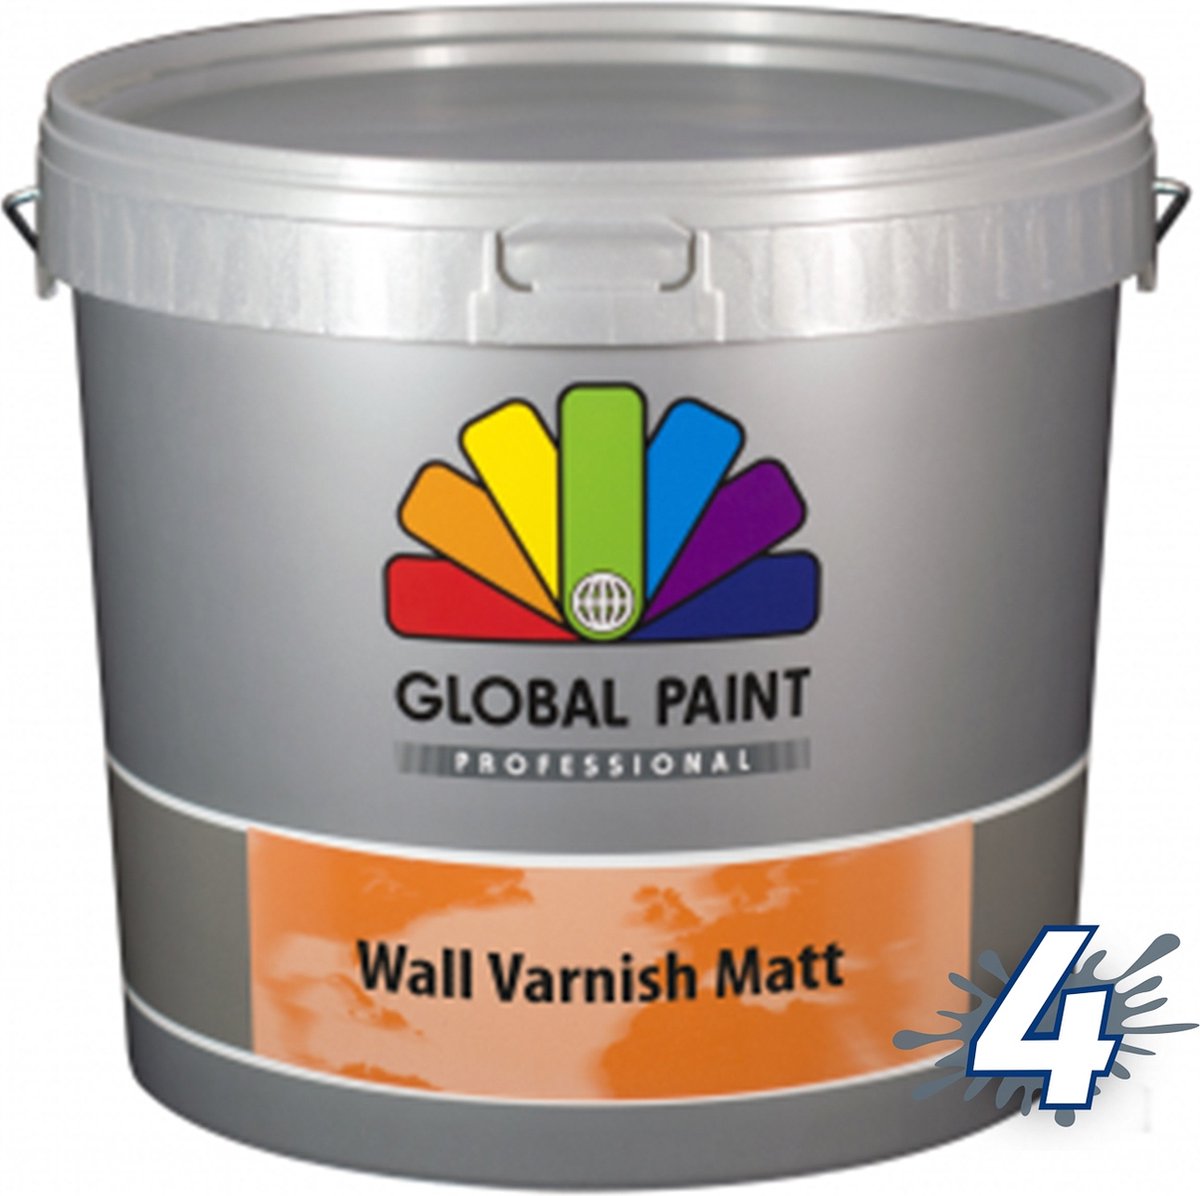 Global Paint Wall Varnish Matt | 5 L | Transparant | Beschermt Vochtbelasting | Voor Binnen | Mat | Klusverf